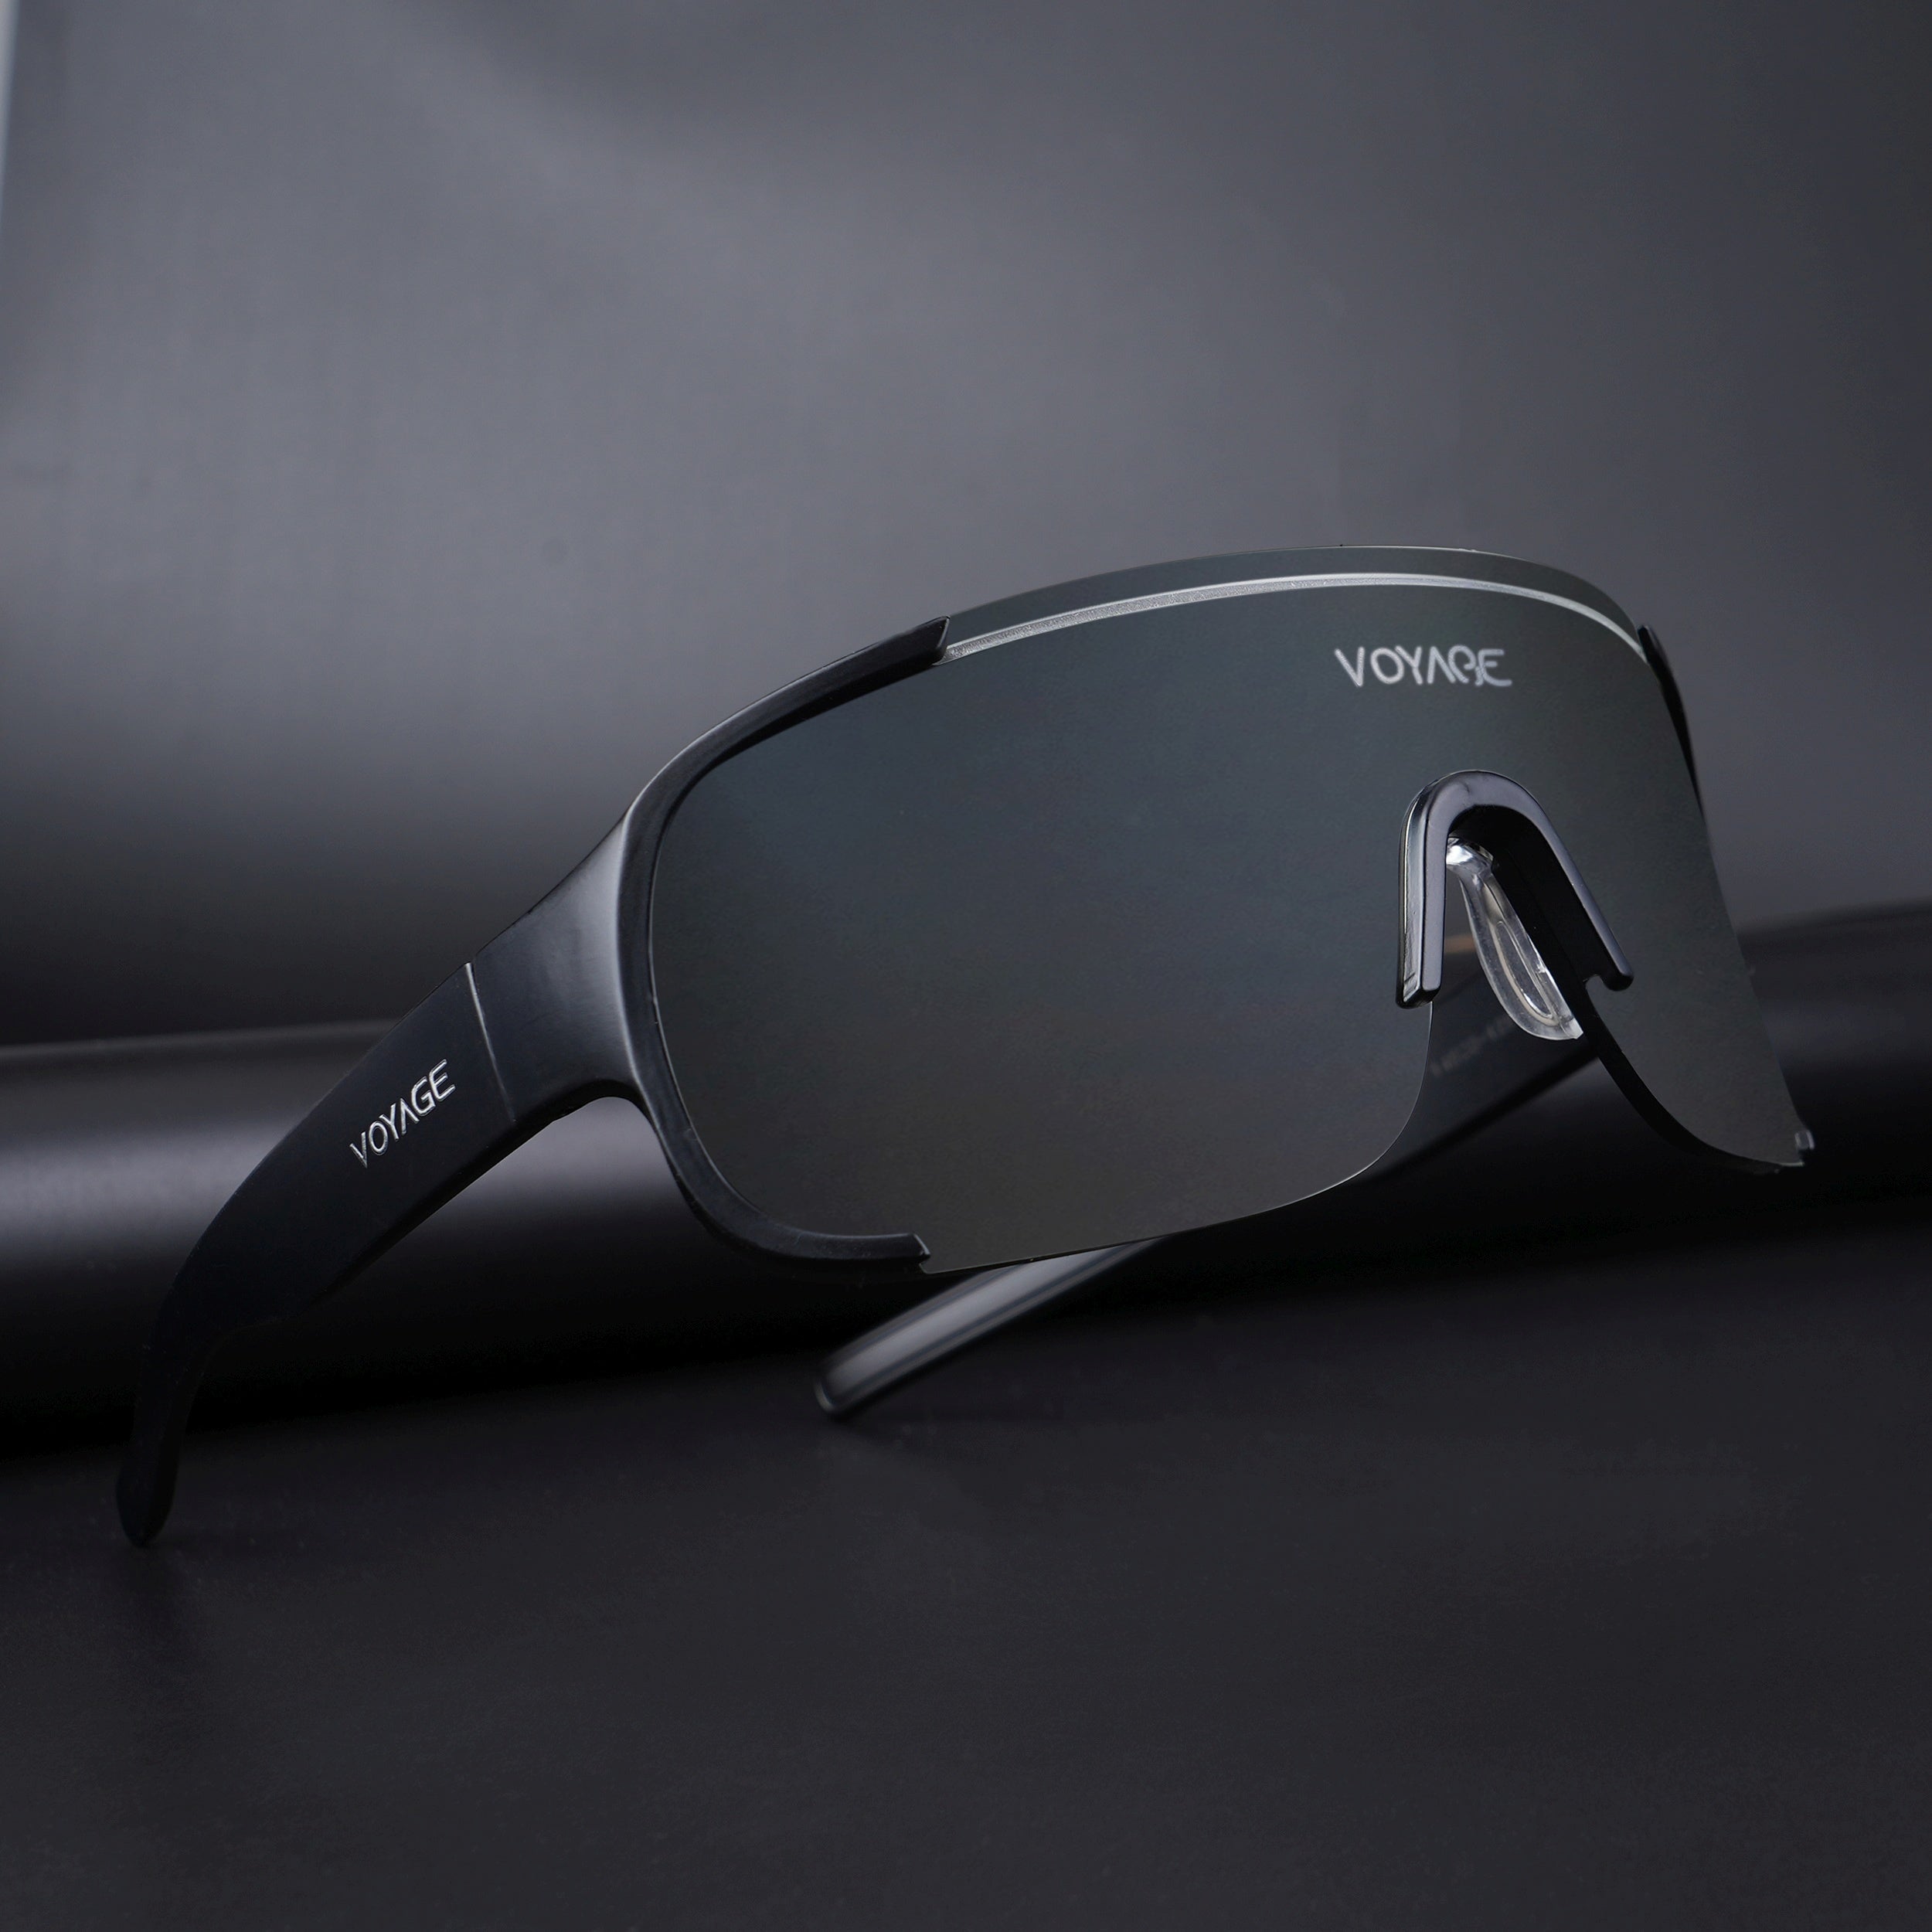 Voyage Drift Sunglasses for Men & Women (Clear Lens | Black Frame - MG5515)